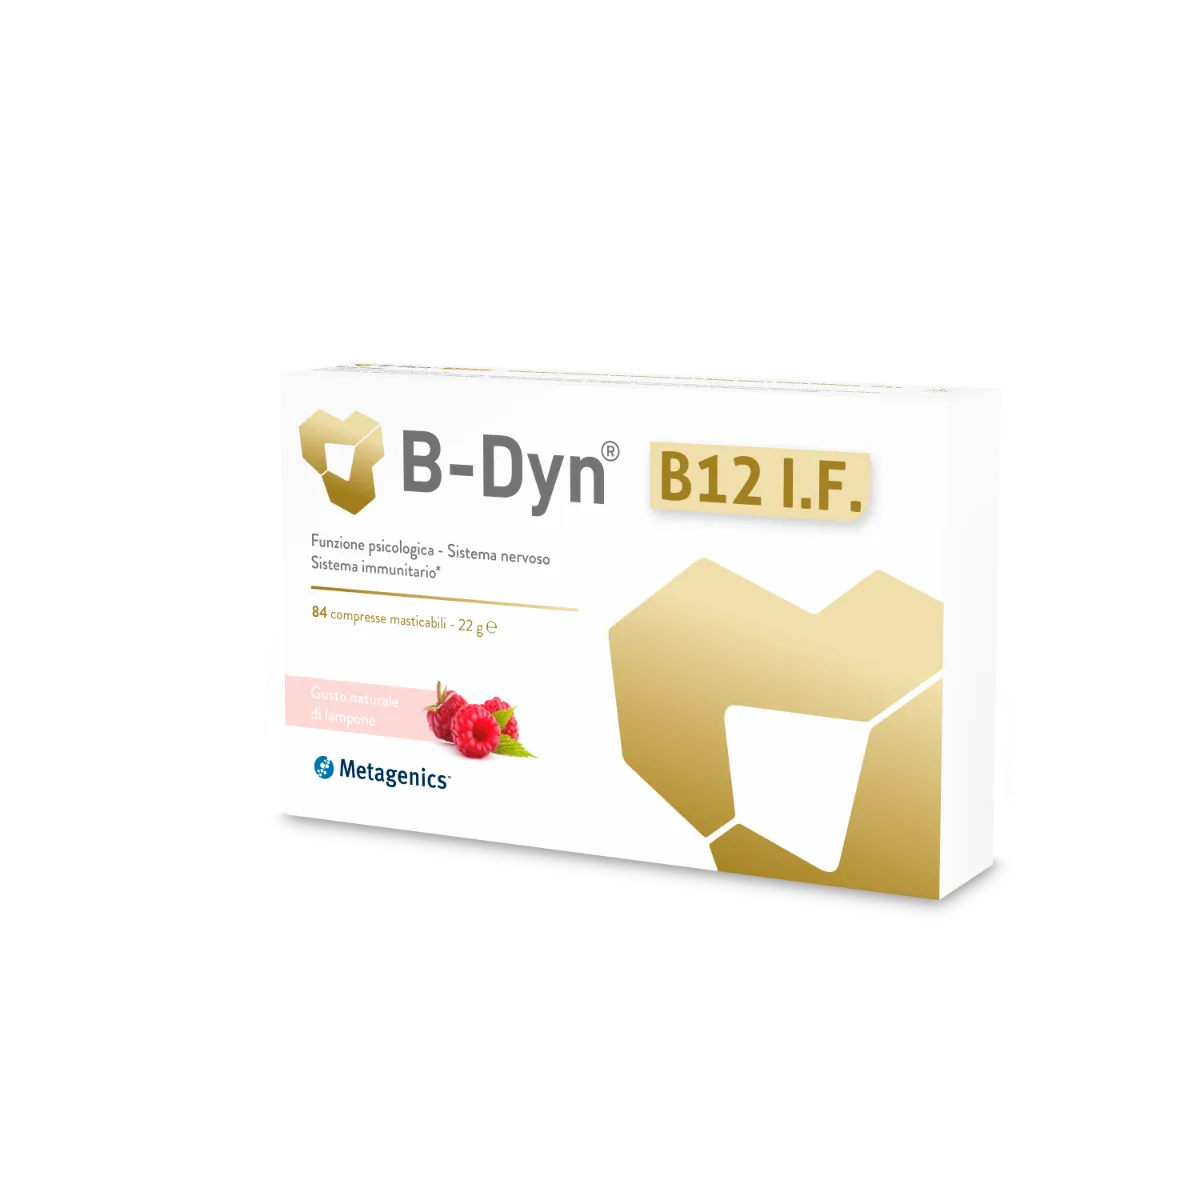 B-DYN B12 IF 84 COMPRESSE MASTICABILI